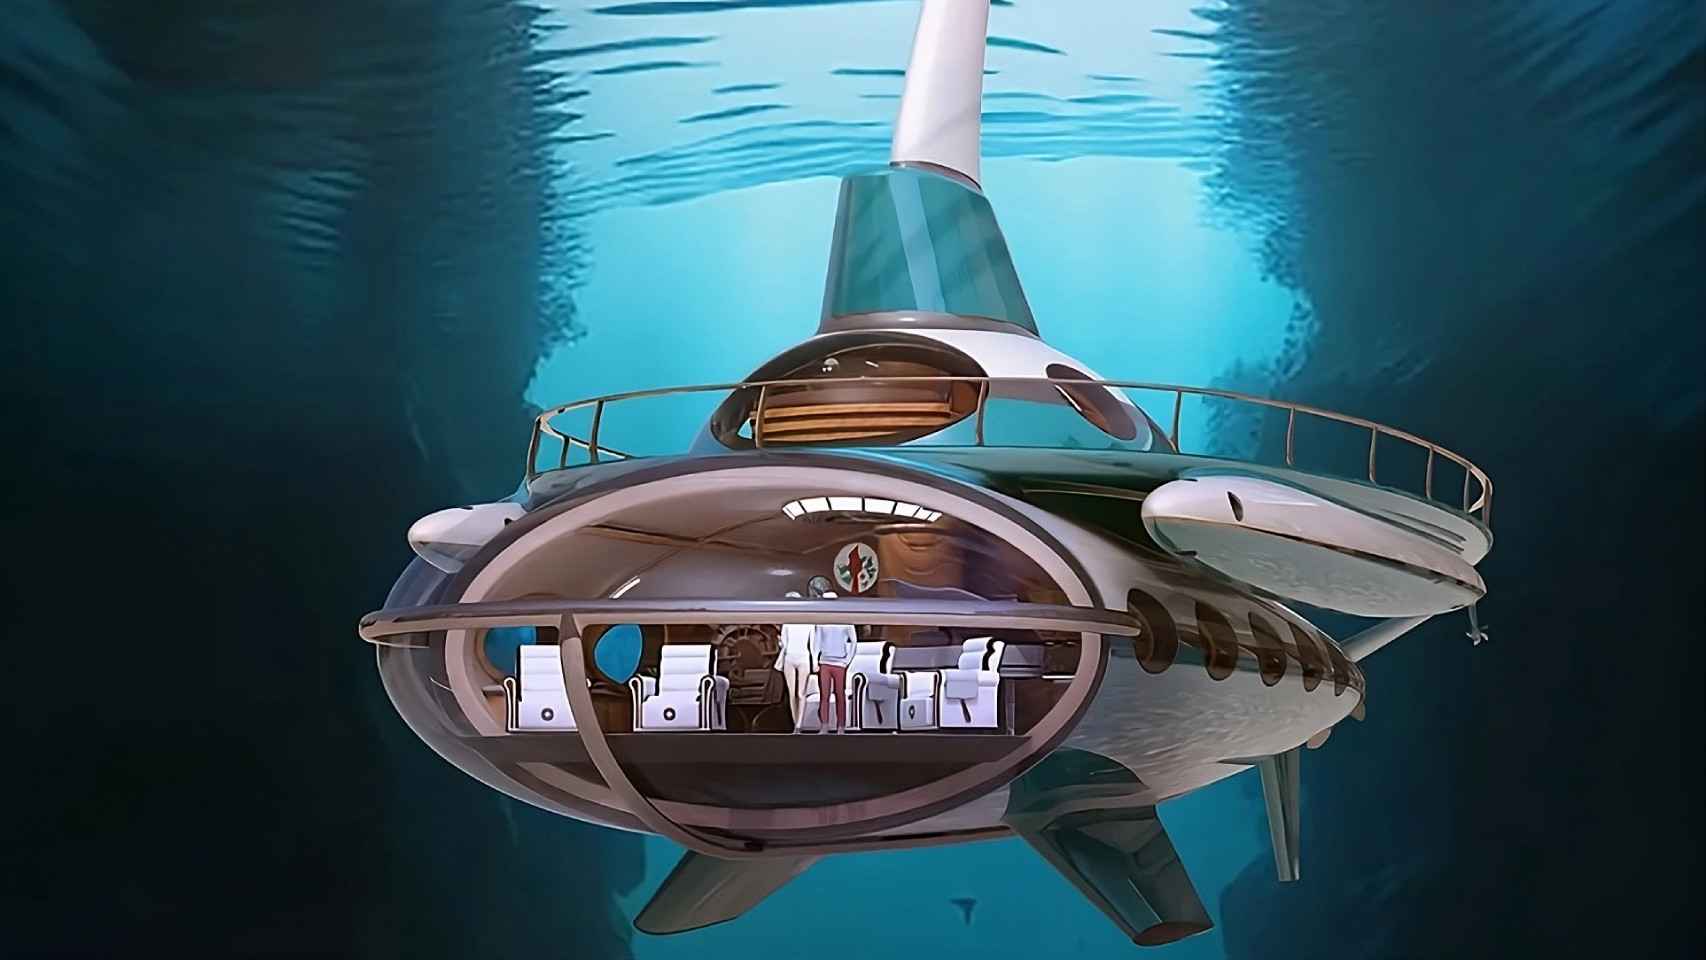 así es el impresionante yate submarino para navegar a 100 metros de profundidad y con 10.000 km de autonomía